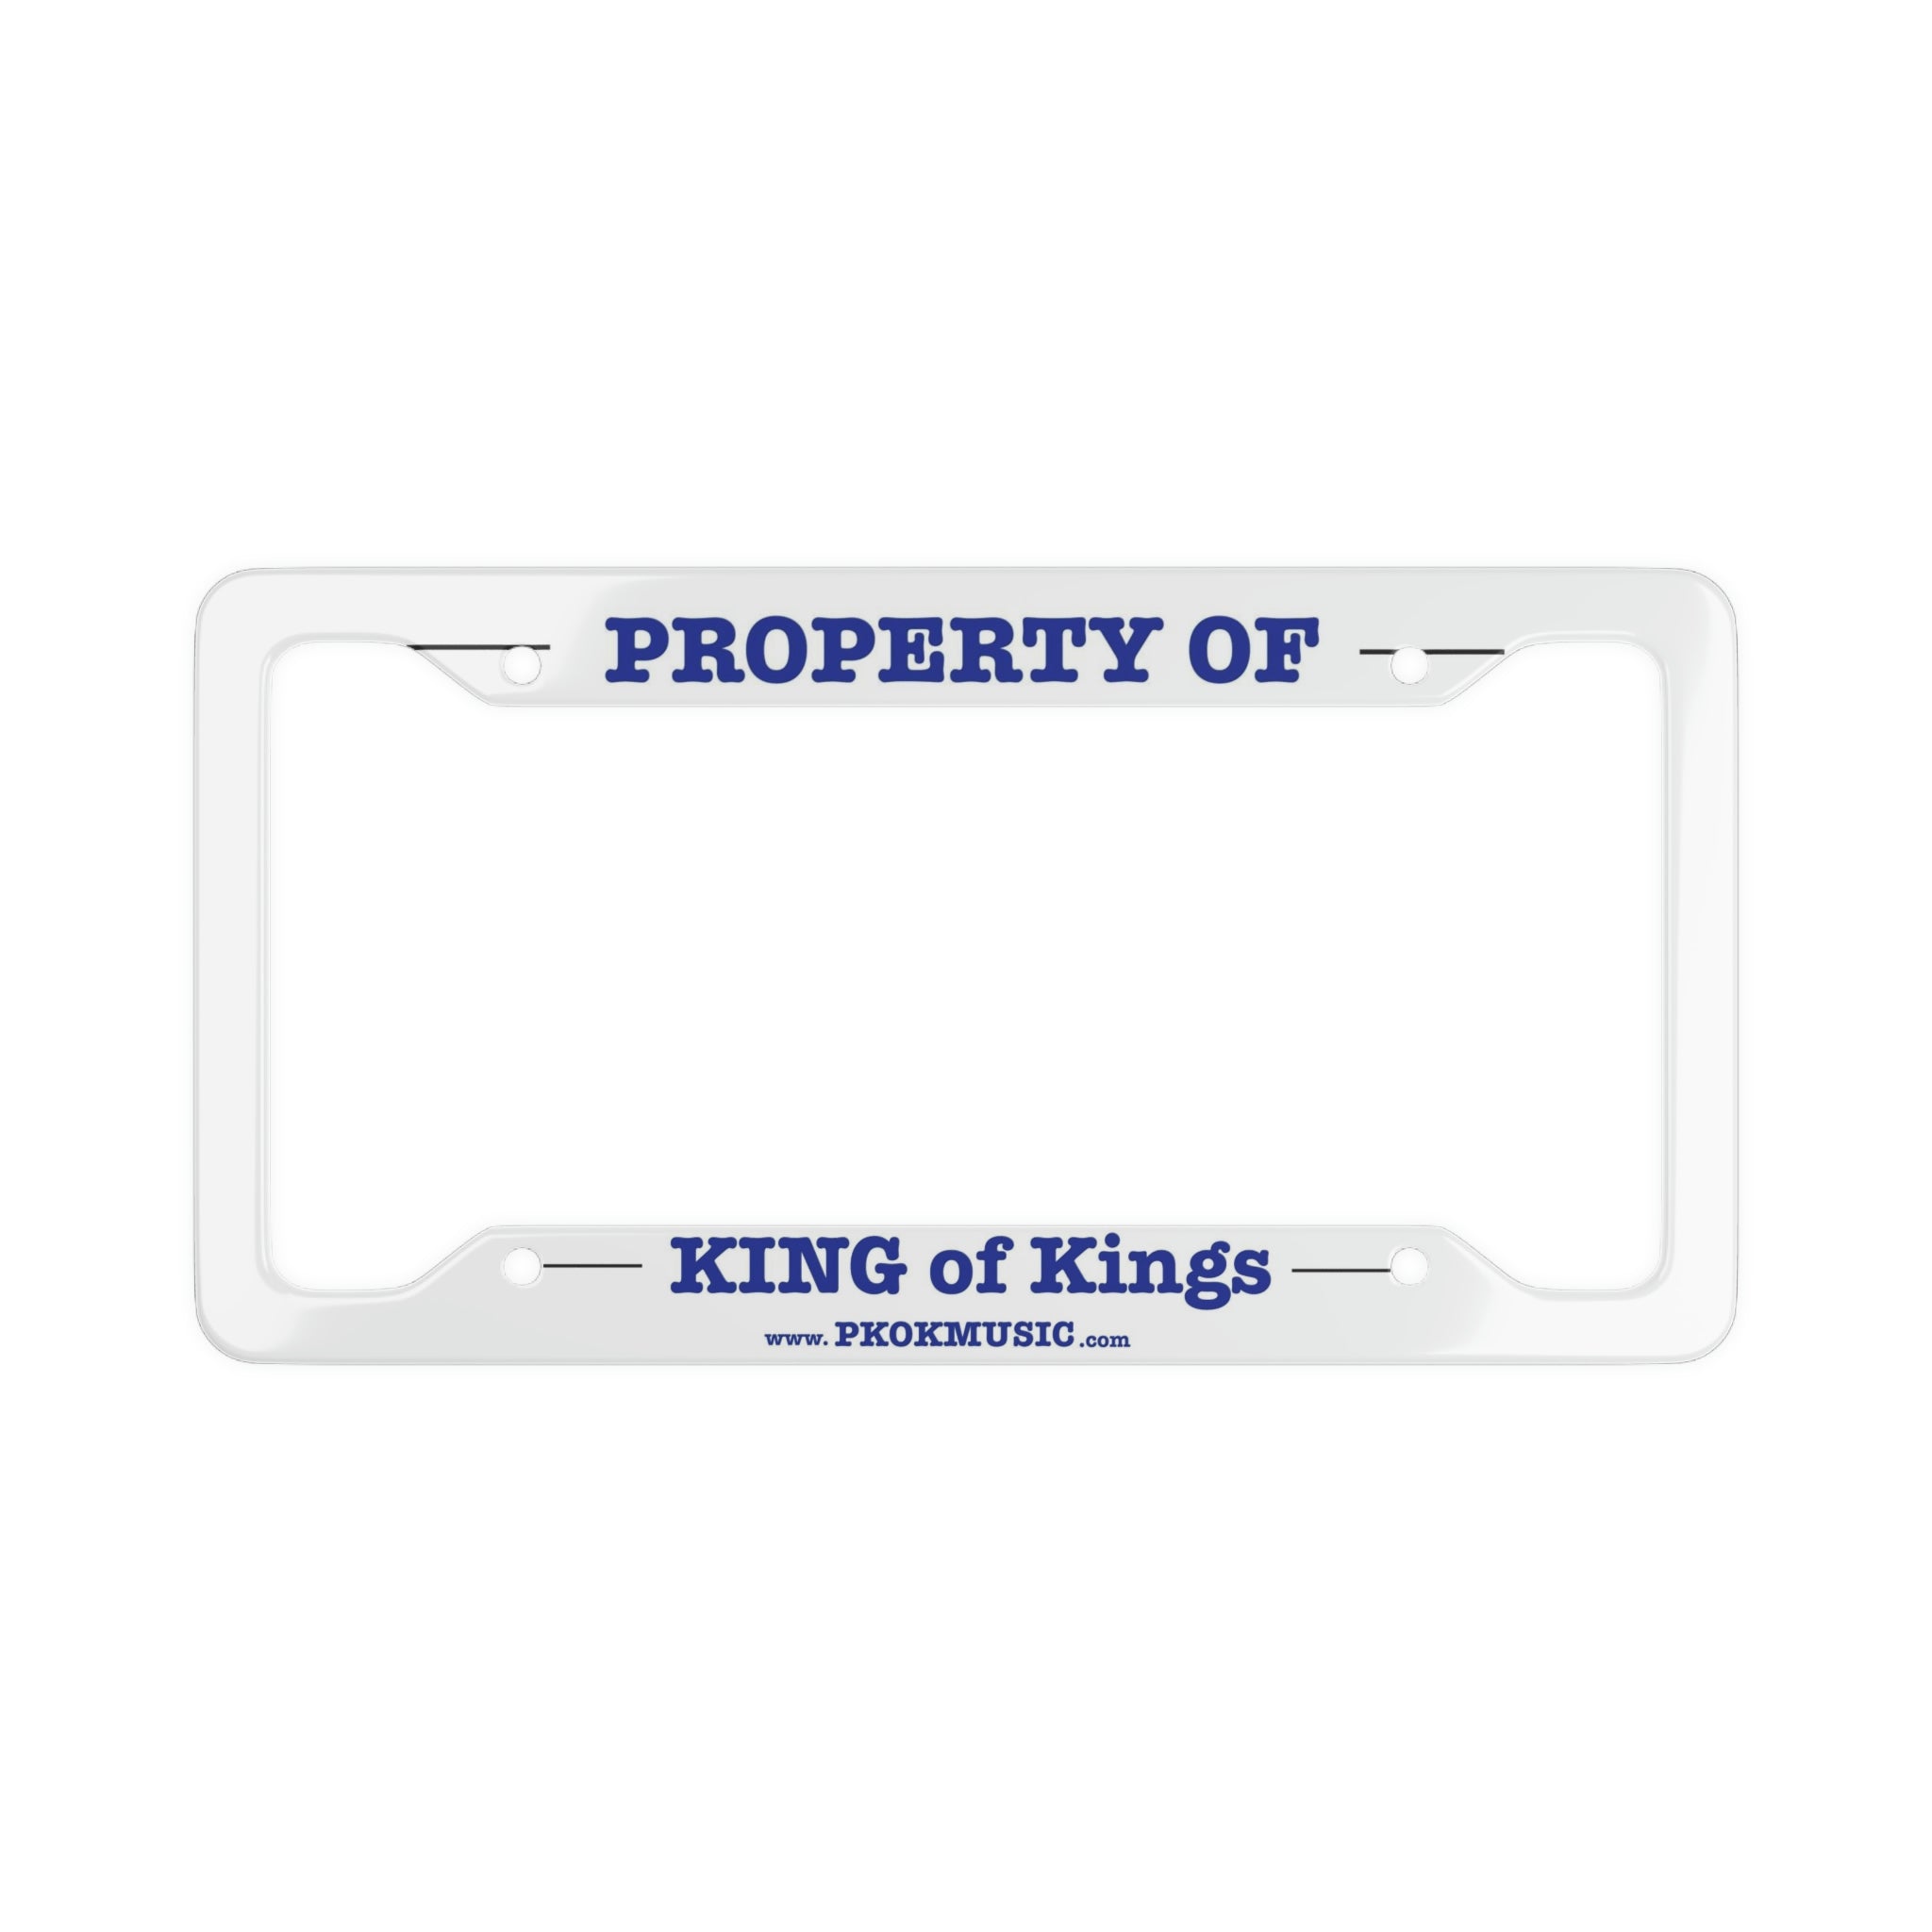 PKOK License Plate Frame